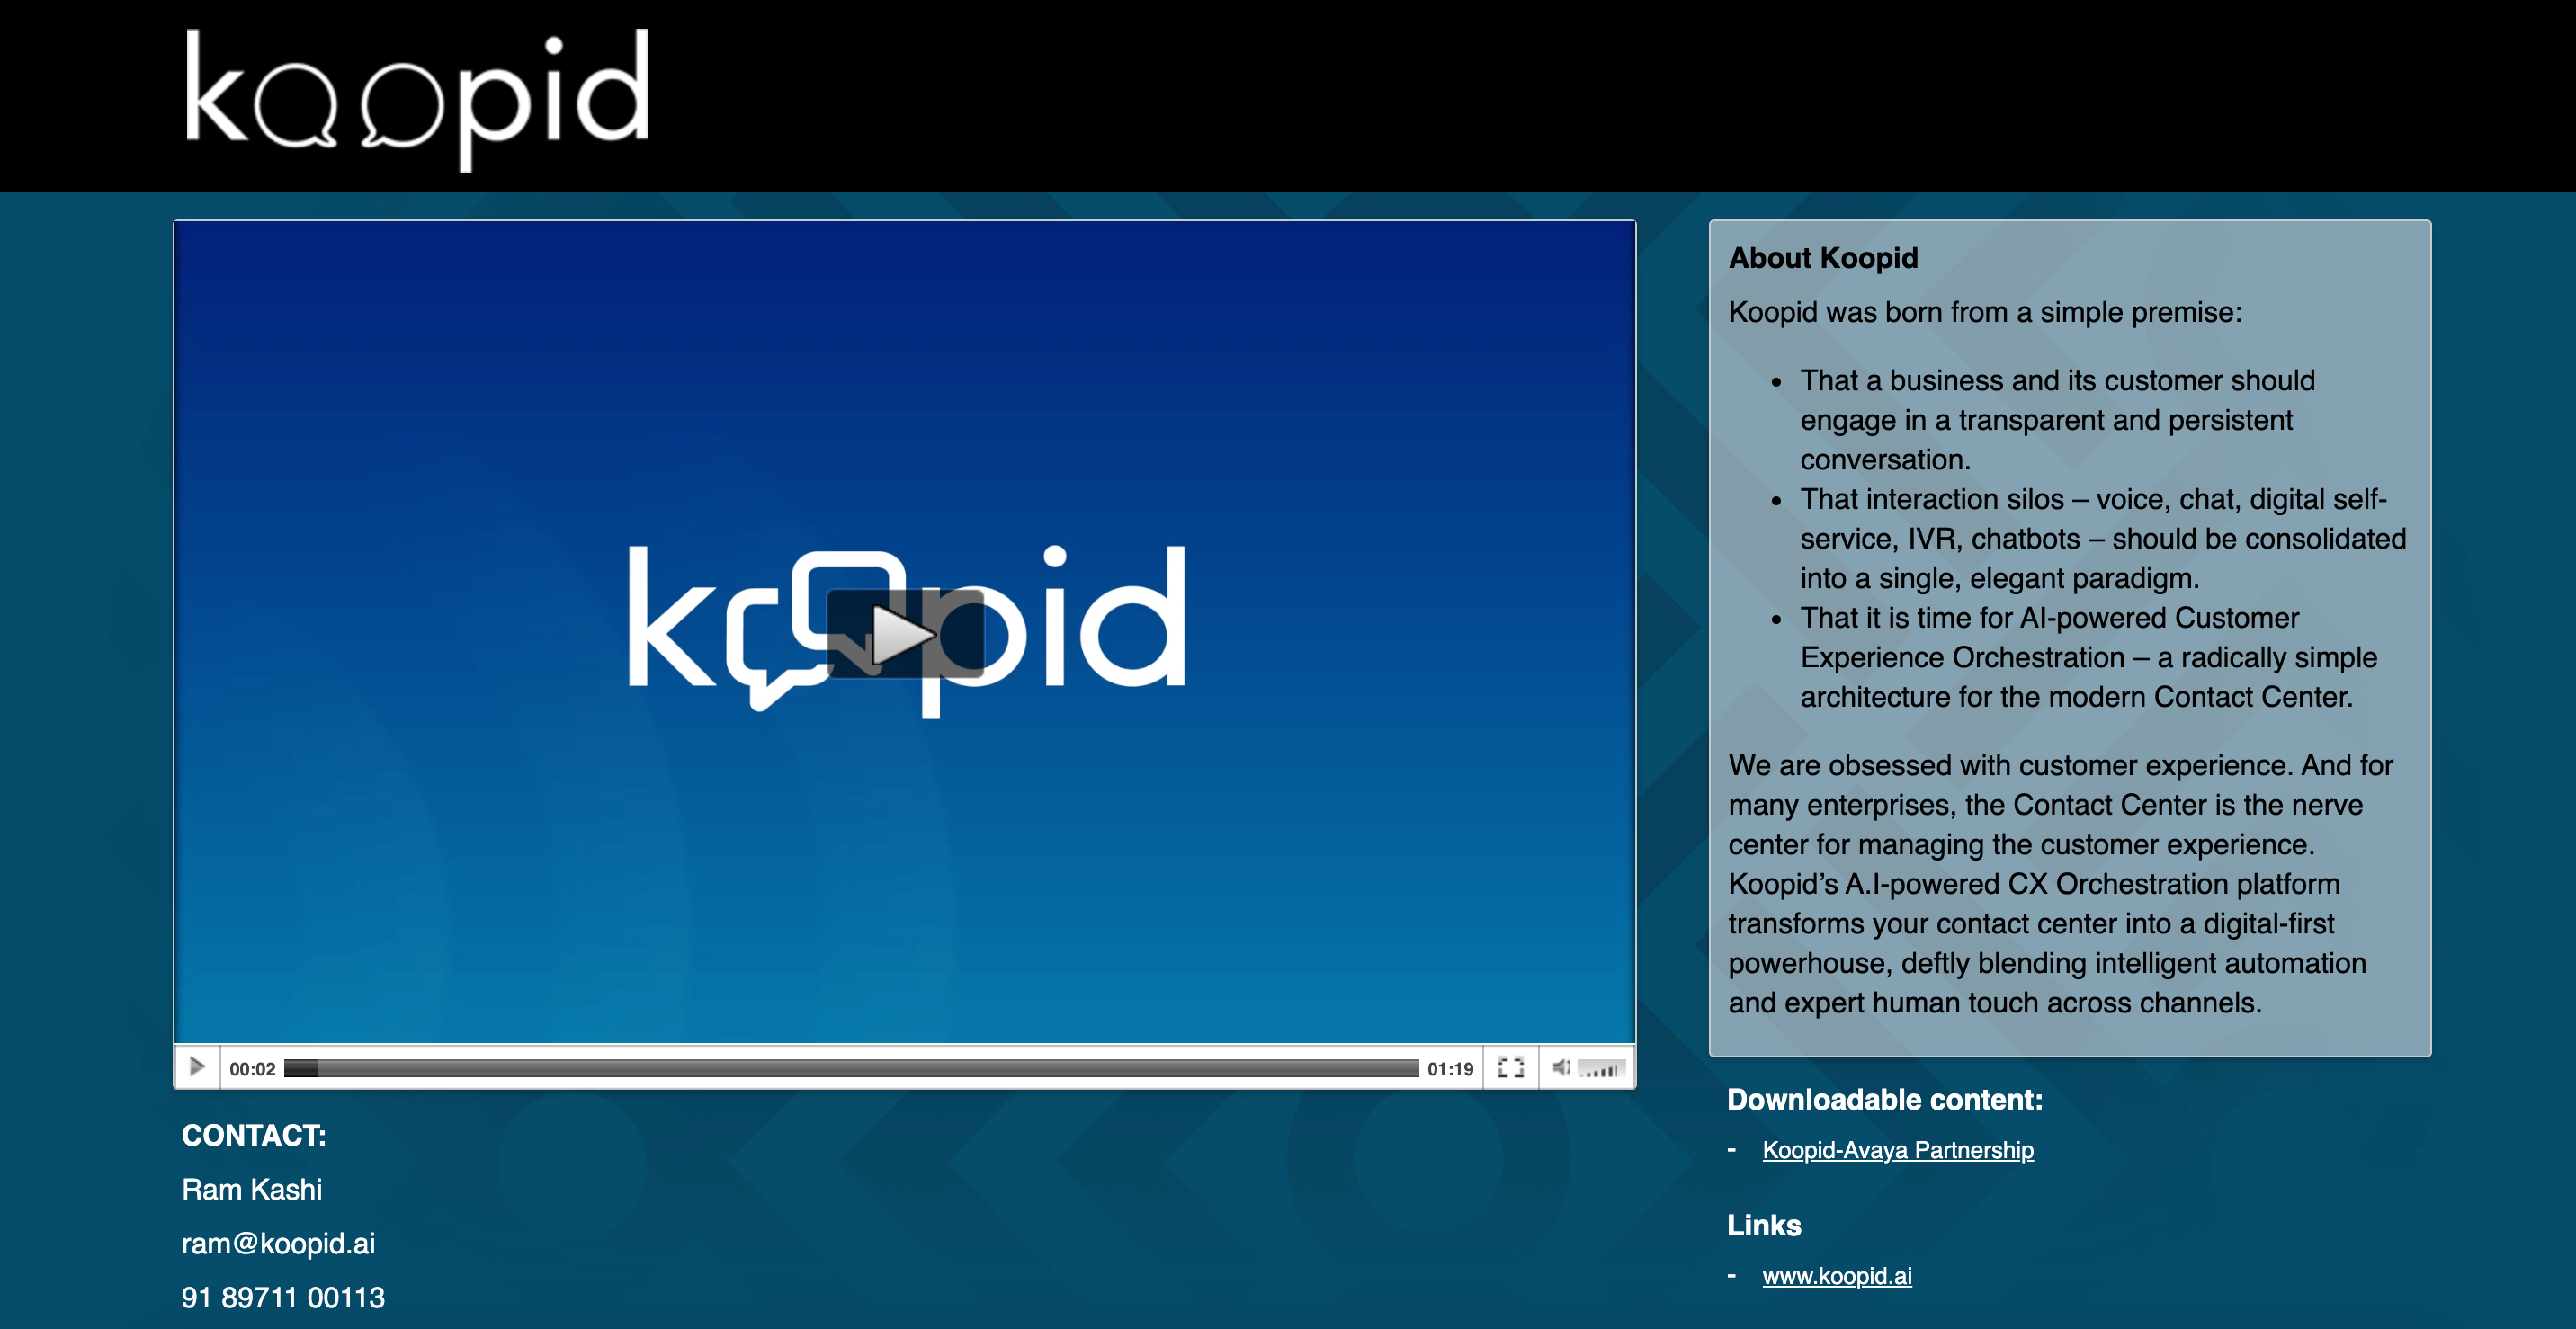 Koopid-Browser-Based-Webinar